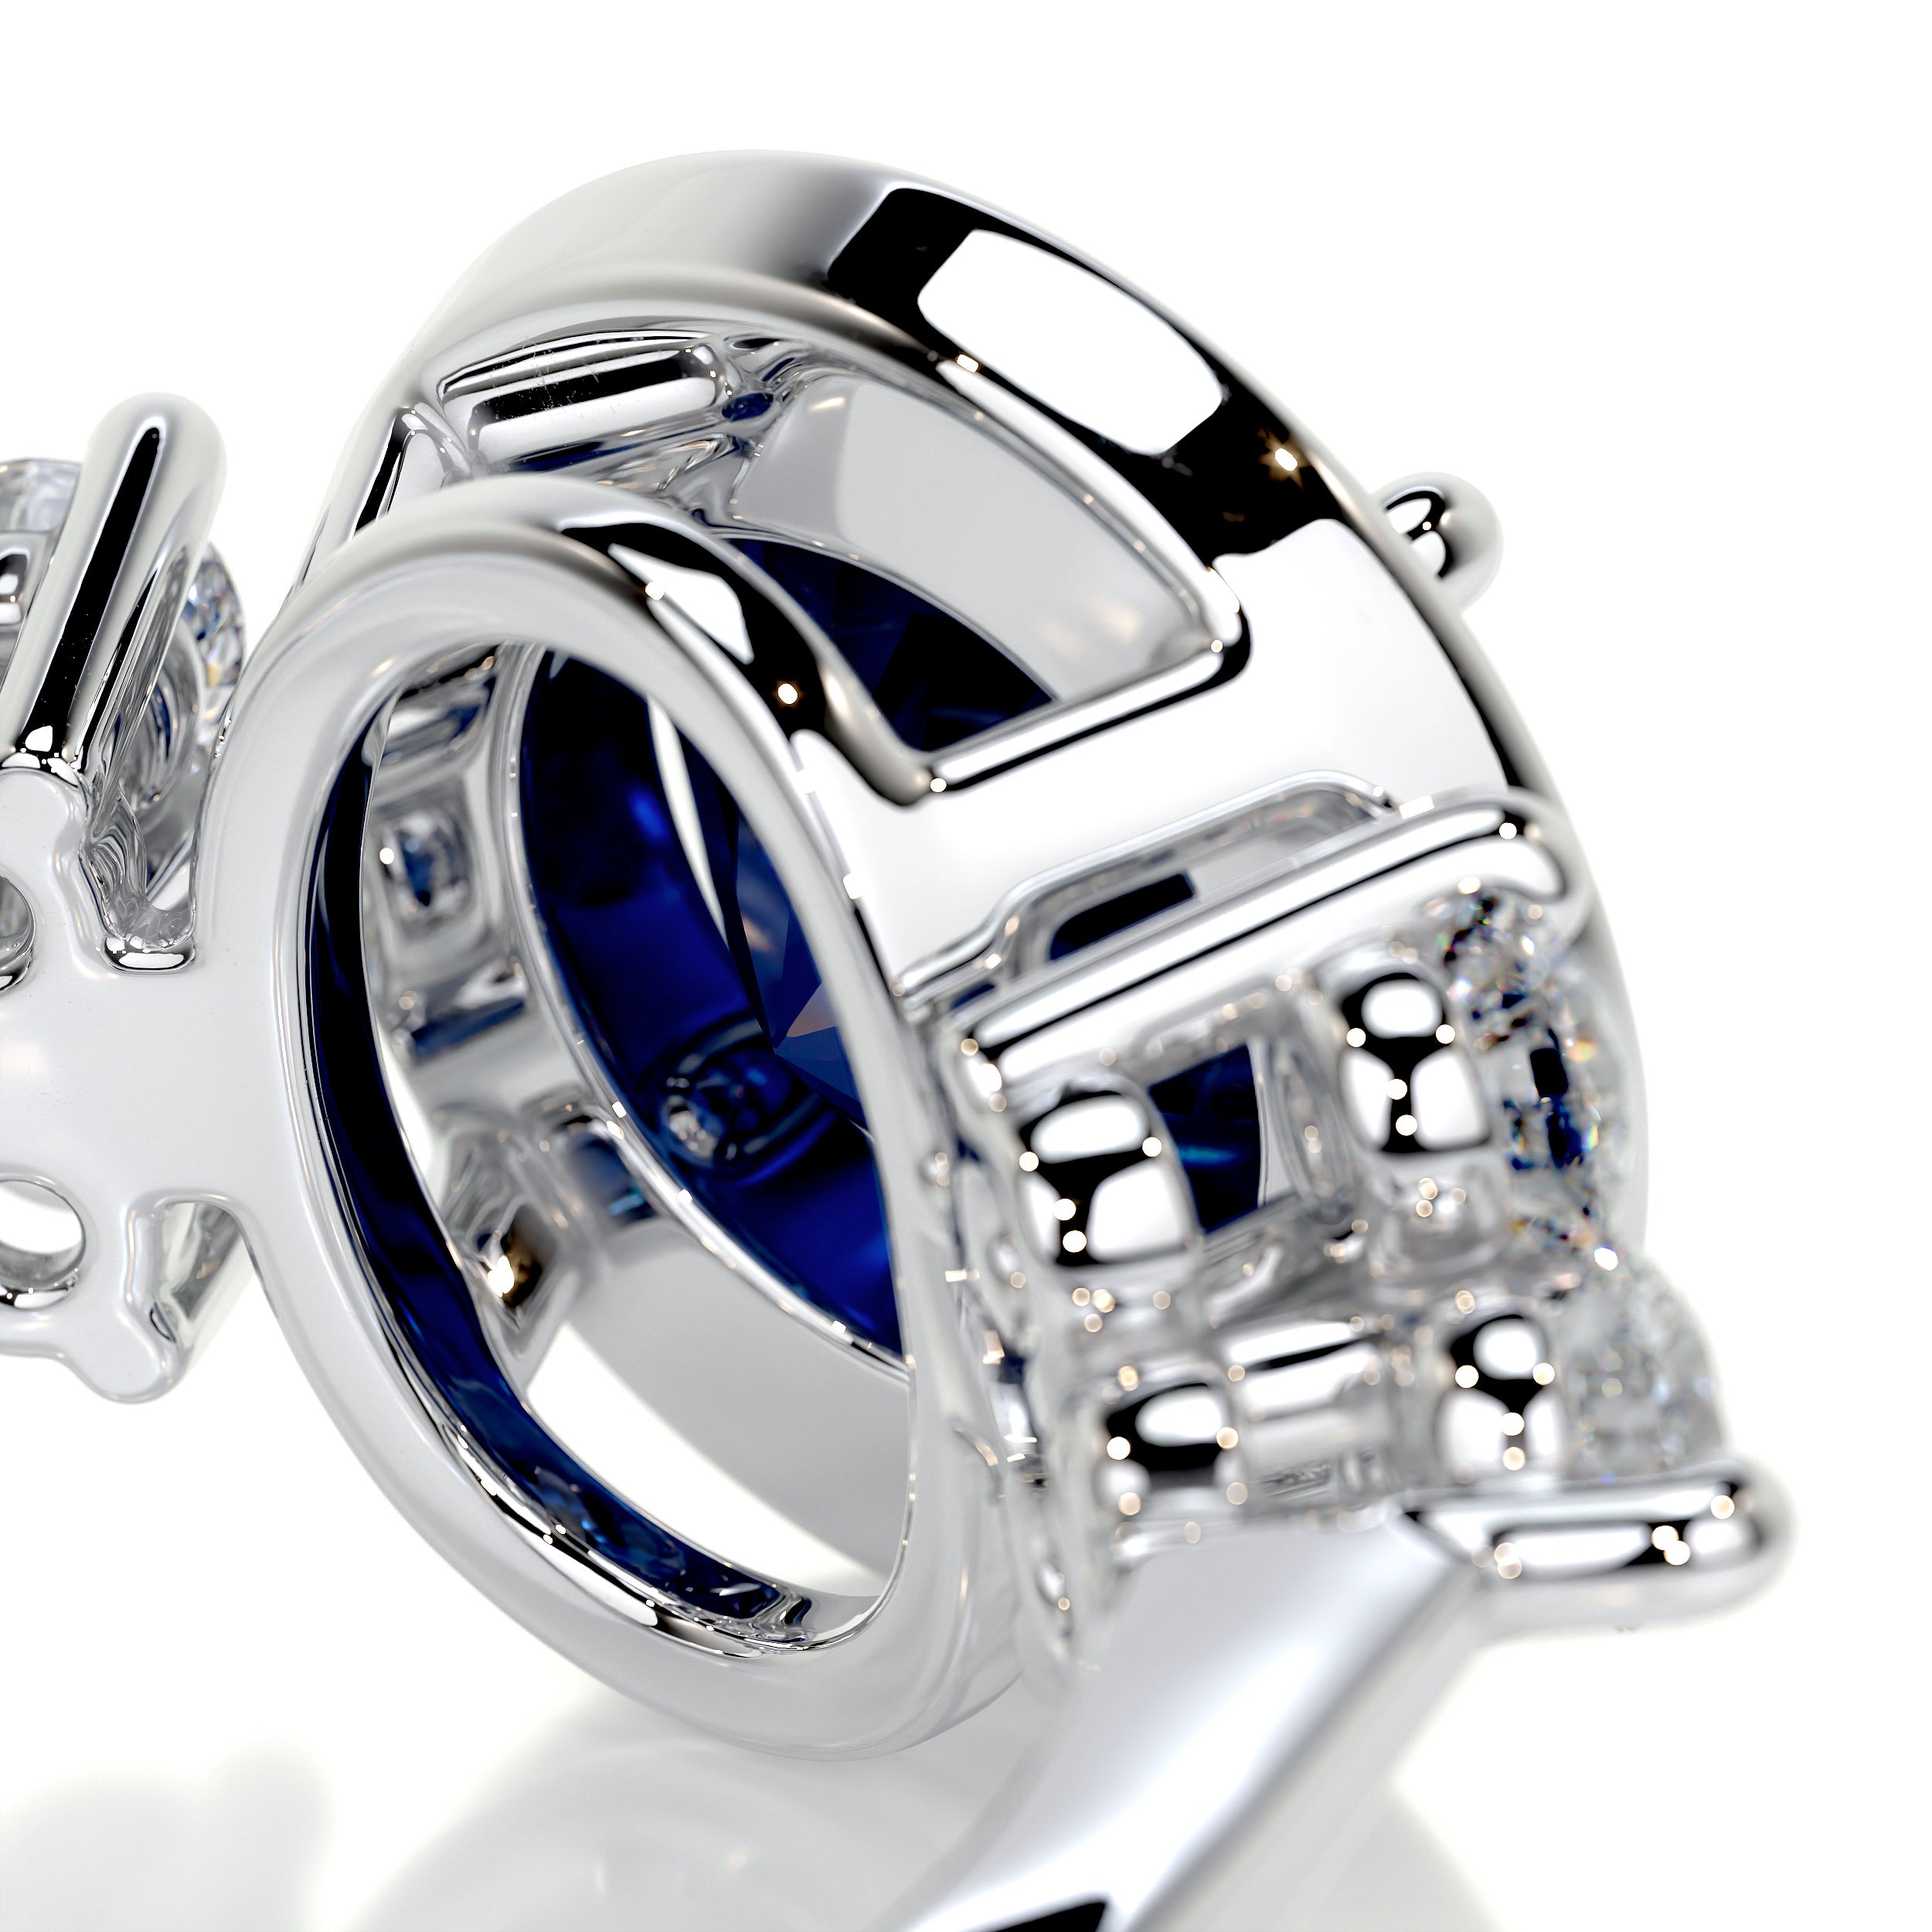 Ivy Gemstone & Diamonds Ring   (2 Carat) -18K White Gold